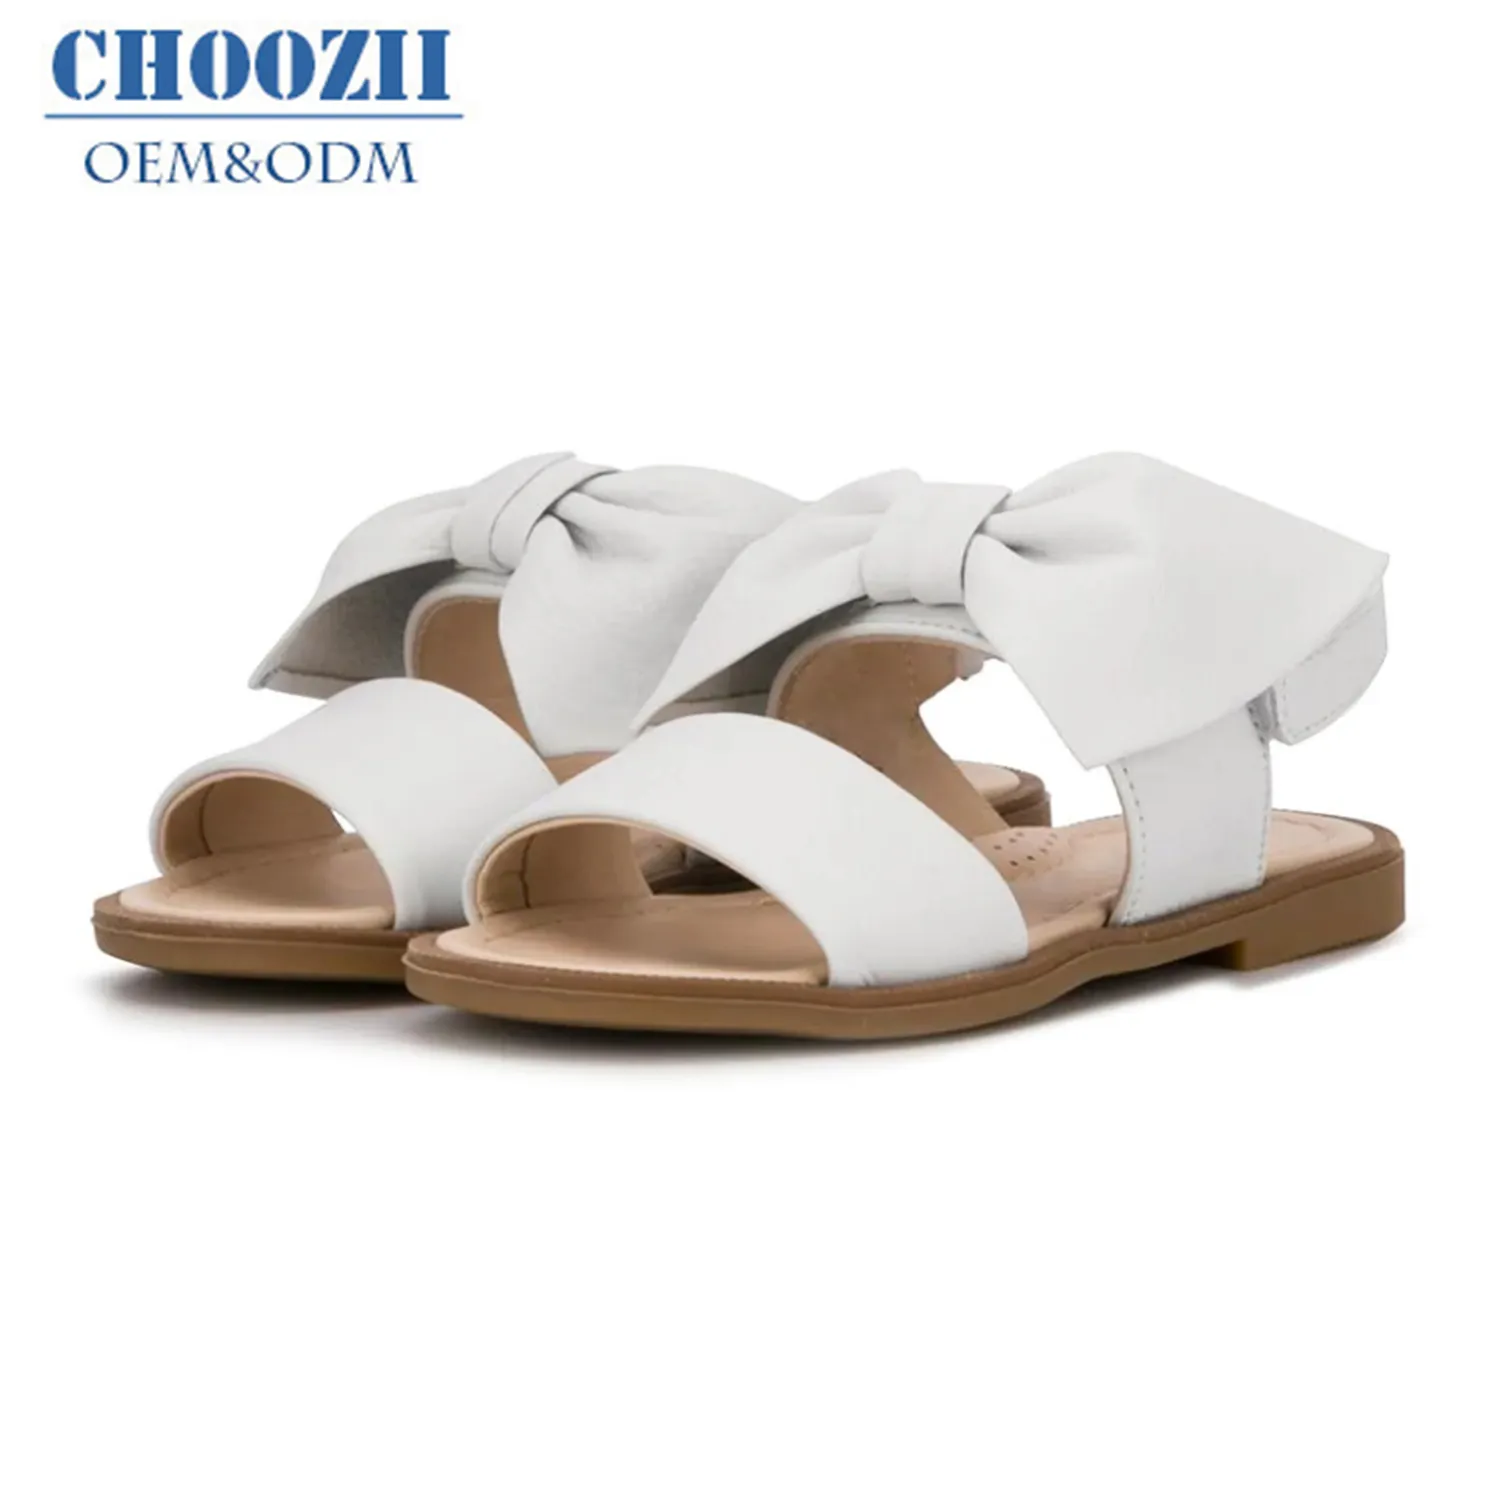 Choozii ใหม่แฟชั่นเด็กรองเท้าฤดูร้อนสีขาวหวานโบว์เจ้าหญิงรองเท้าแตะเด็กรองเท้าหนัง